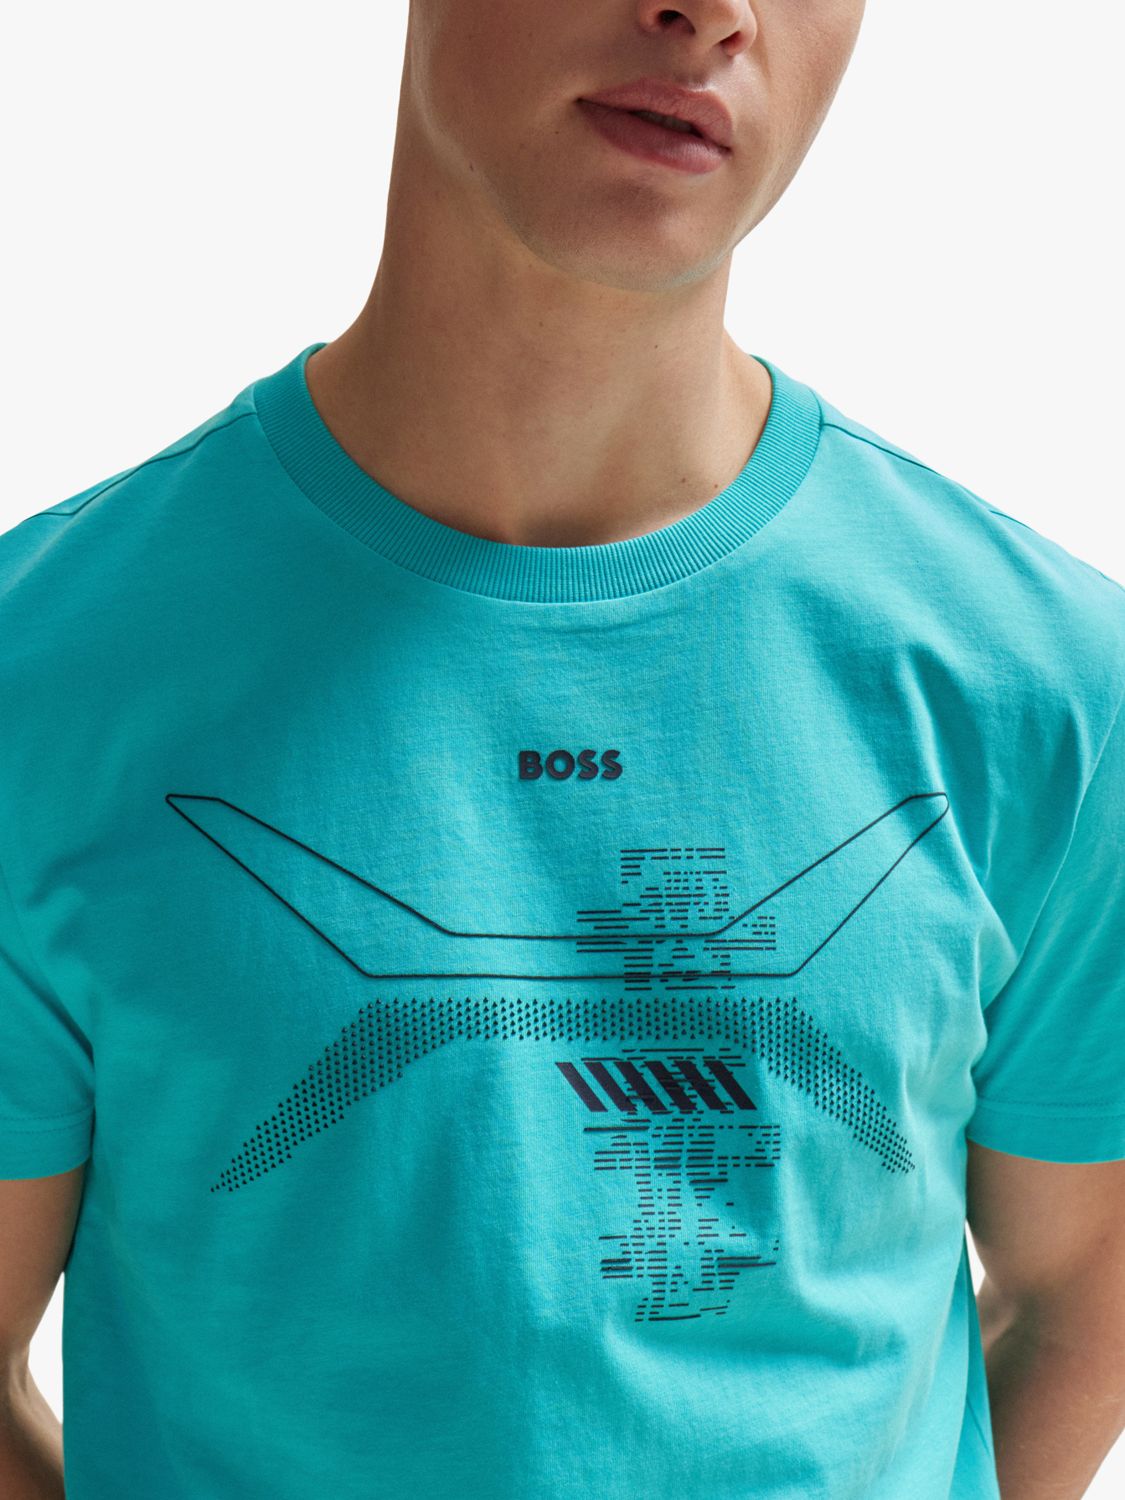 BOSS Cotton Graphic Print T-Shirt, Open Green, M